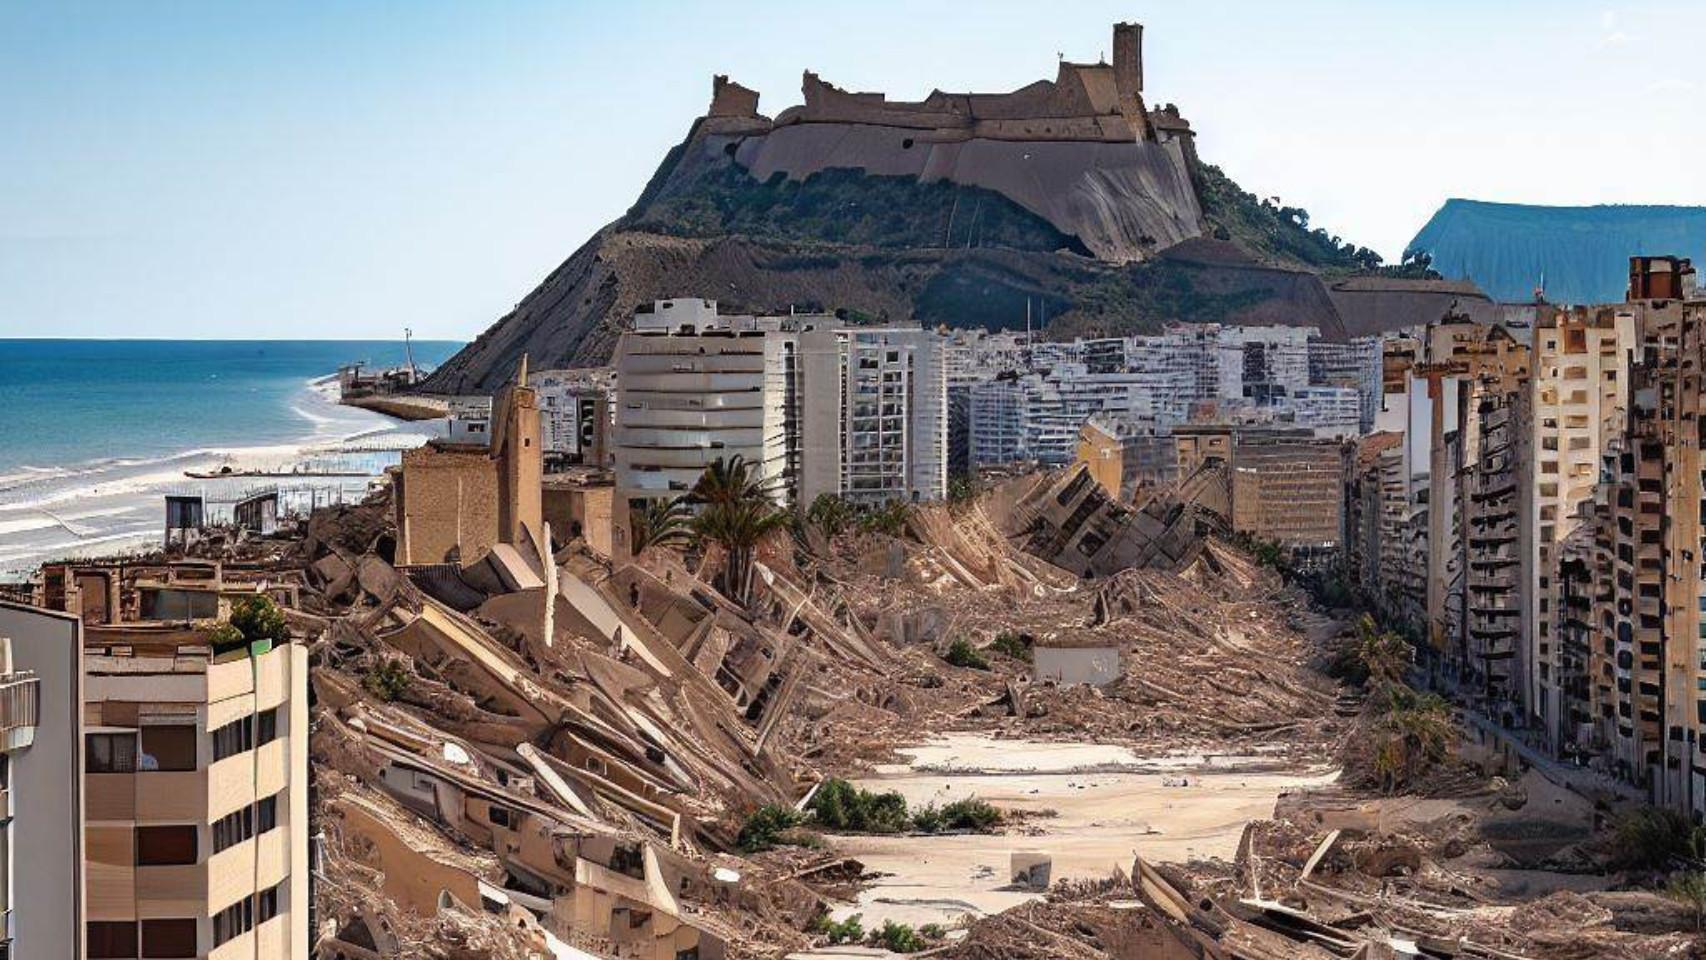 La ciudad de Alicante destruida por un terremoto, en una imagen ficticia de Bing